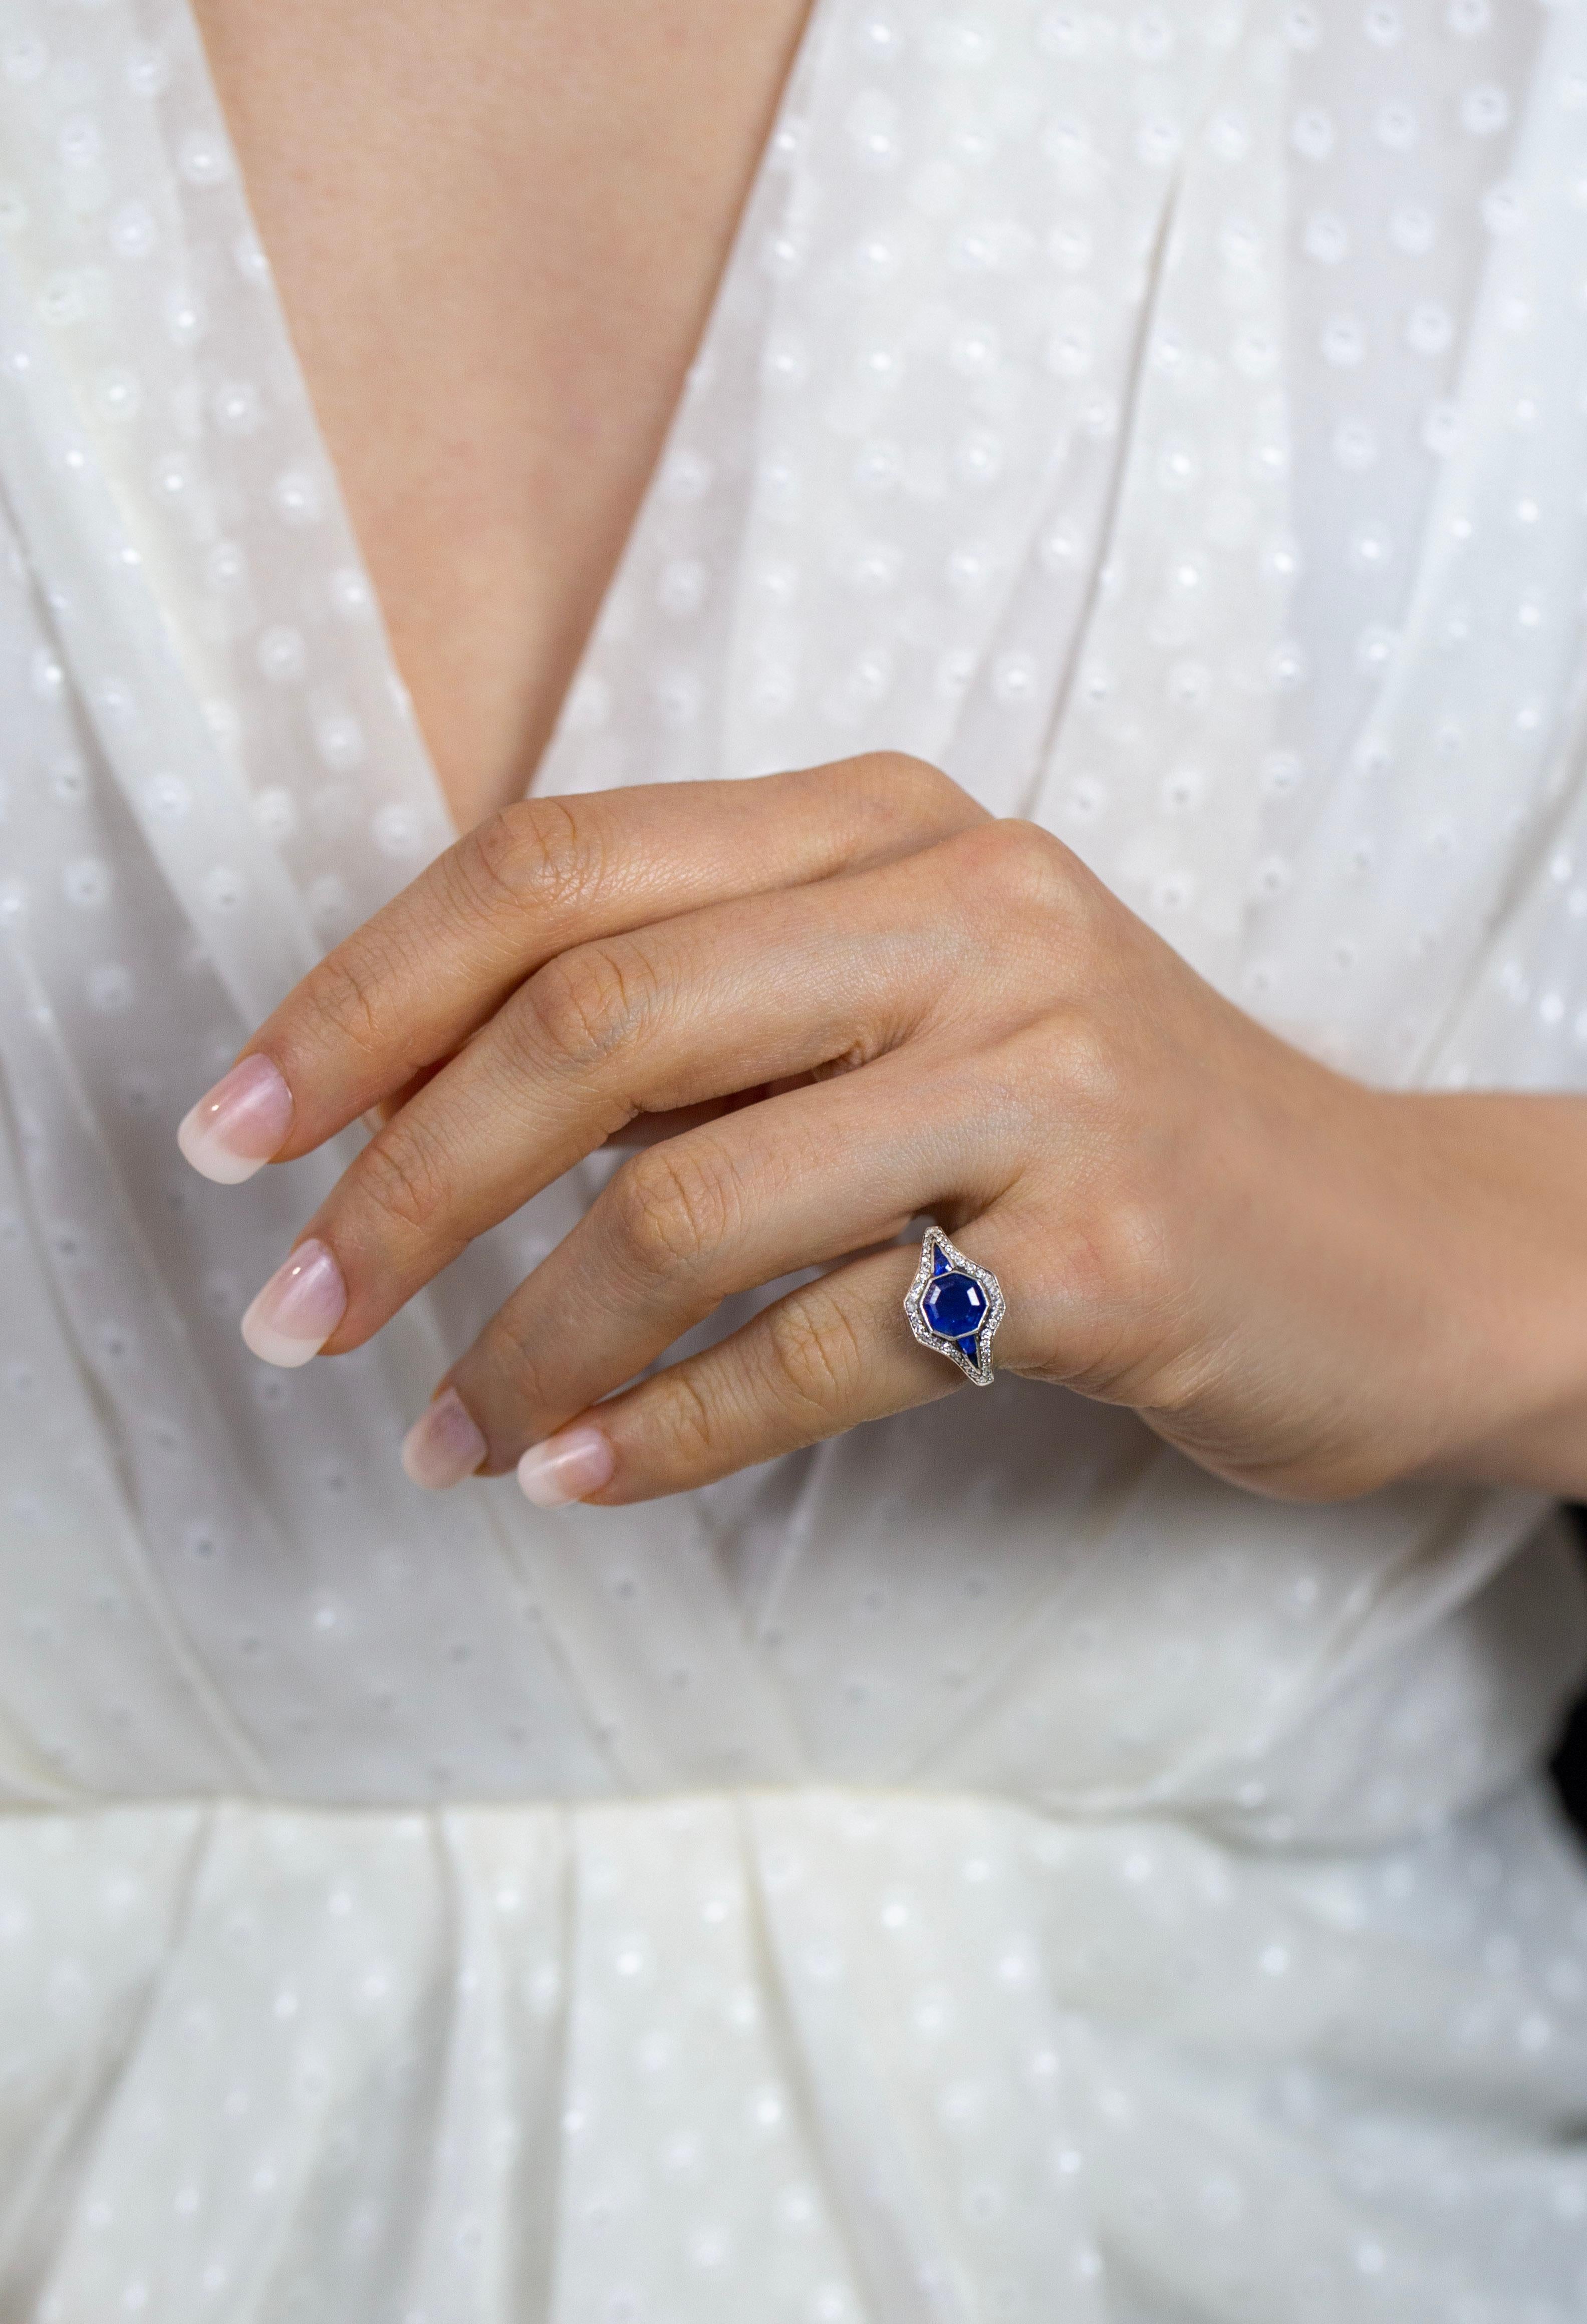 Antique 1.53 Carat Asscher Cut Blue Sapphire Engagement Ring For Sale 2